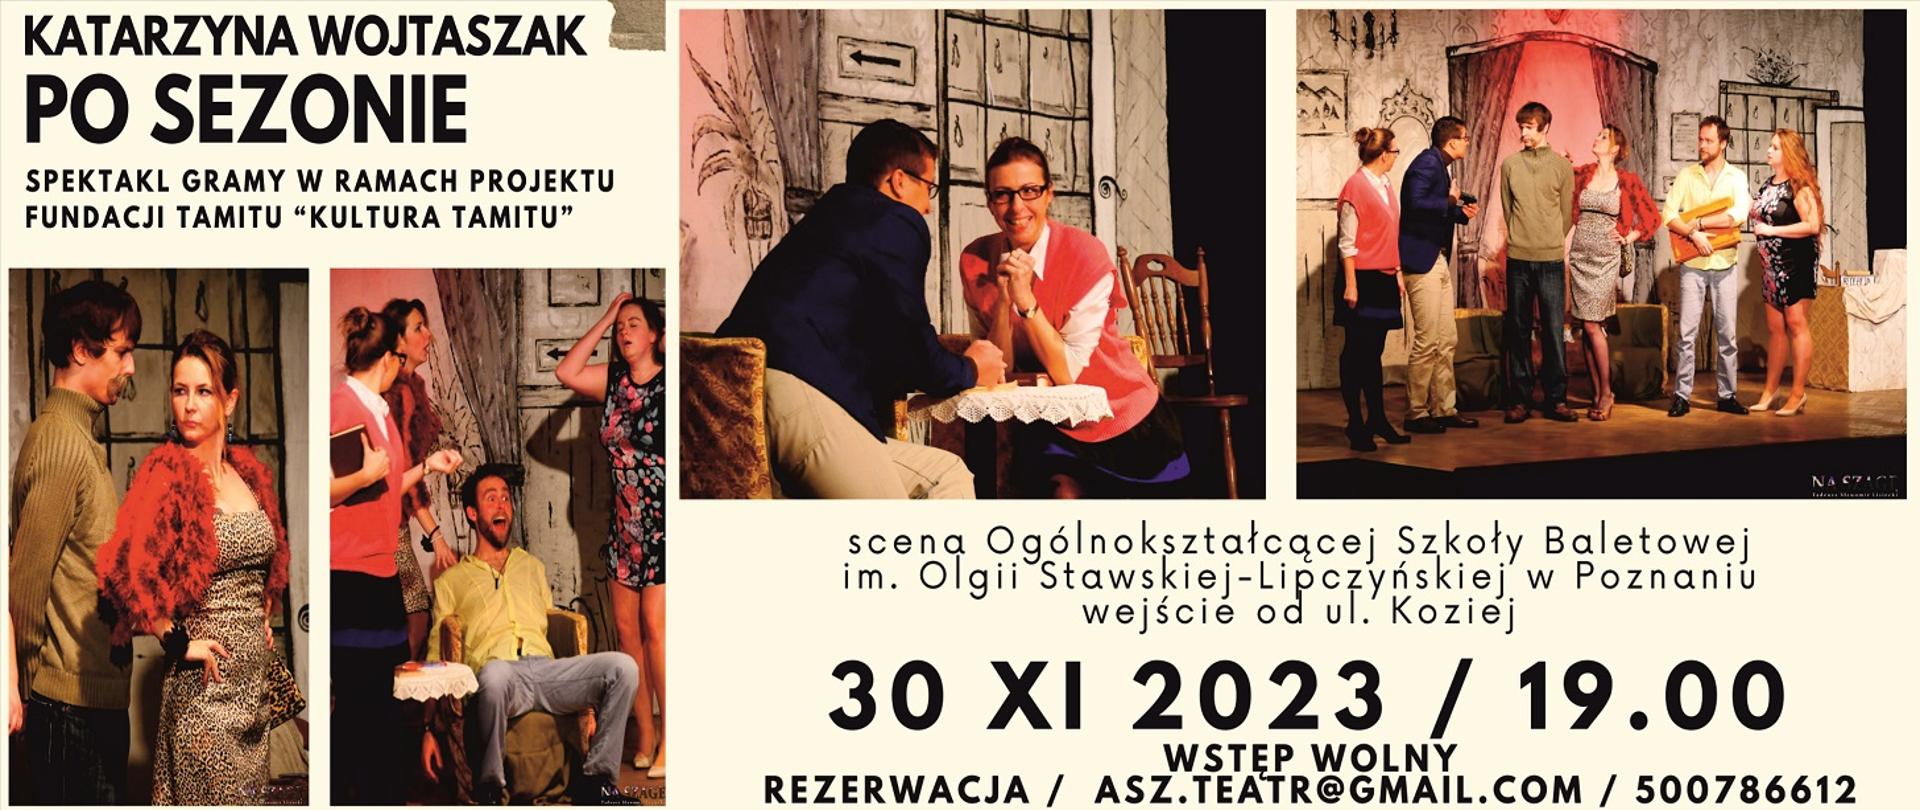 Plakat zapowiadający spektakl PO SEZONIE, kadry ze spektaklu wraz z informacją o dacie i godzinie oraz miejscu.